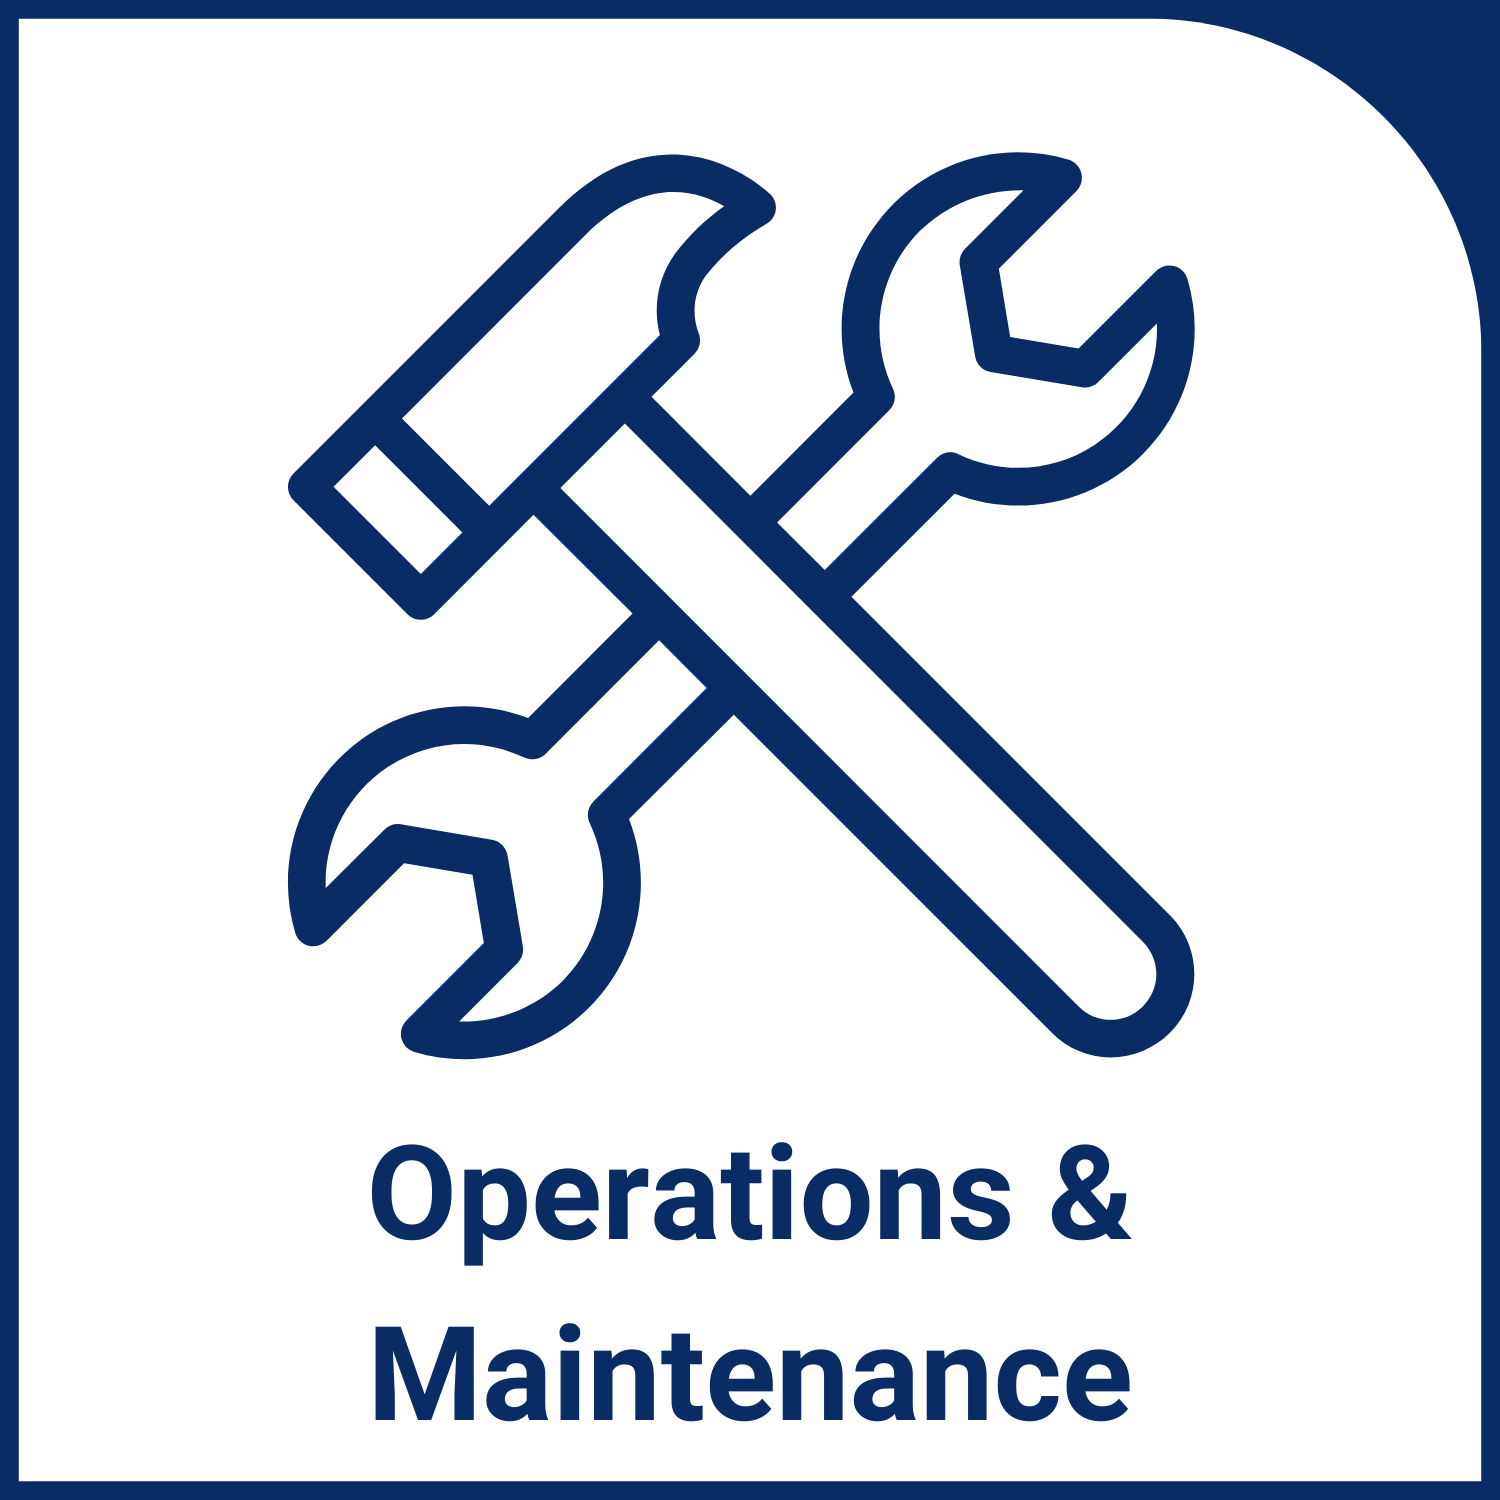 Operations & Maintenance